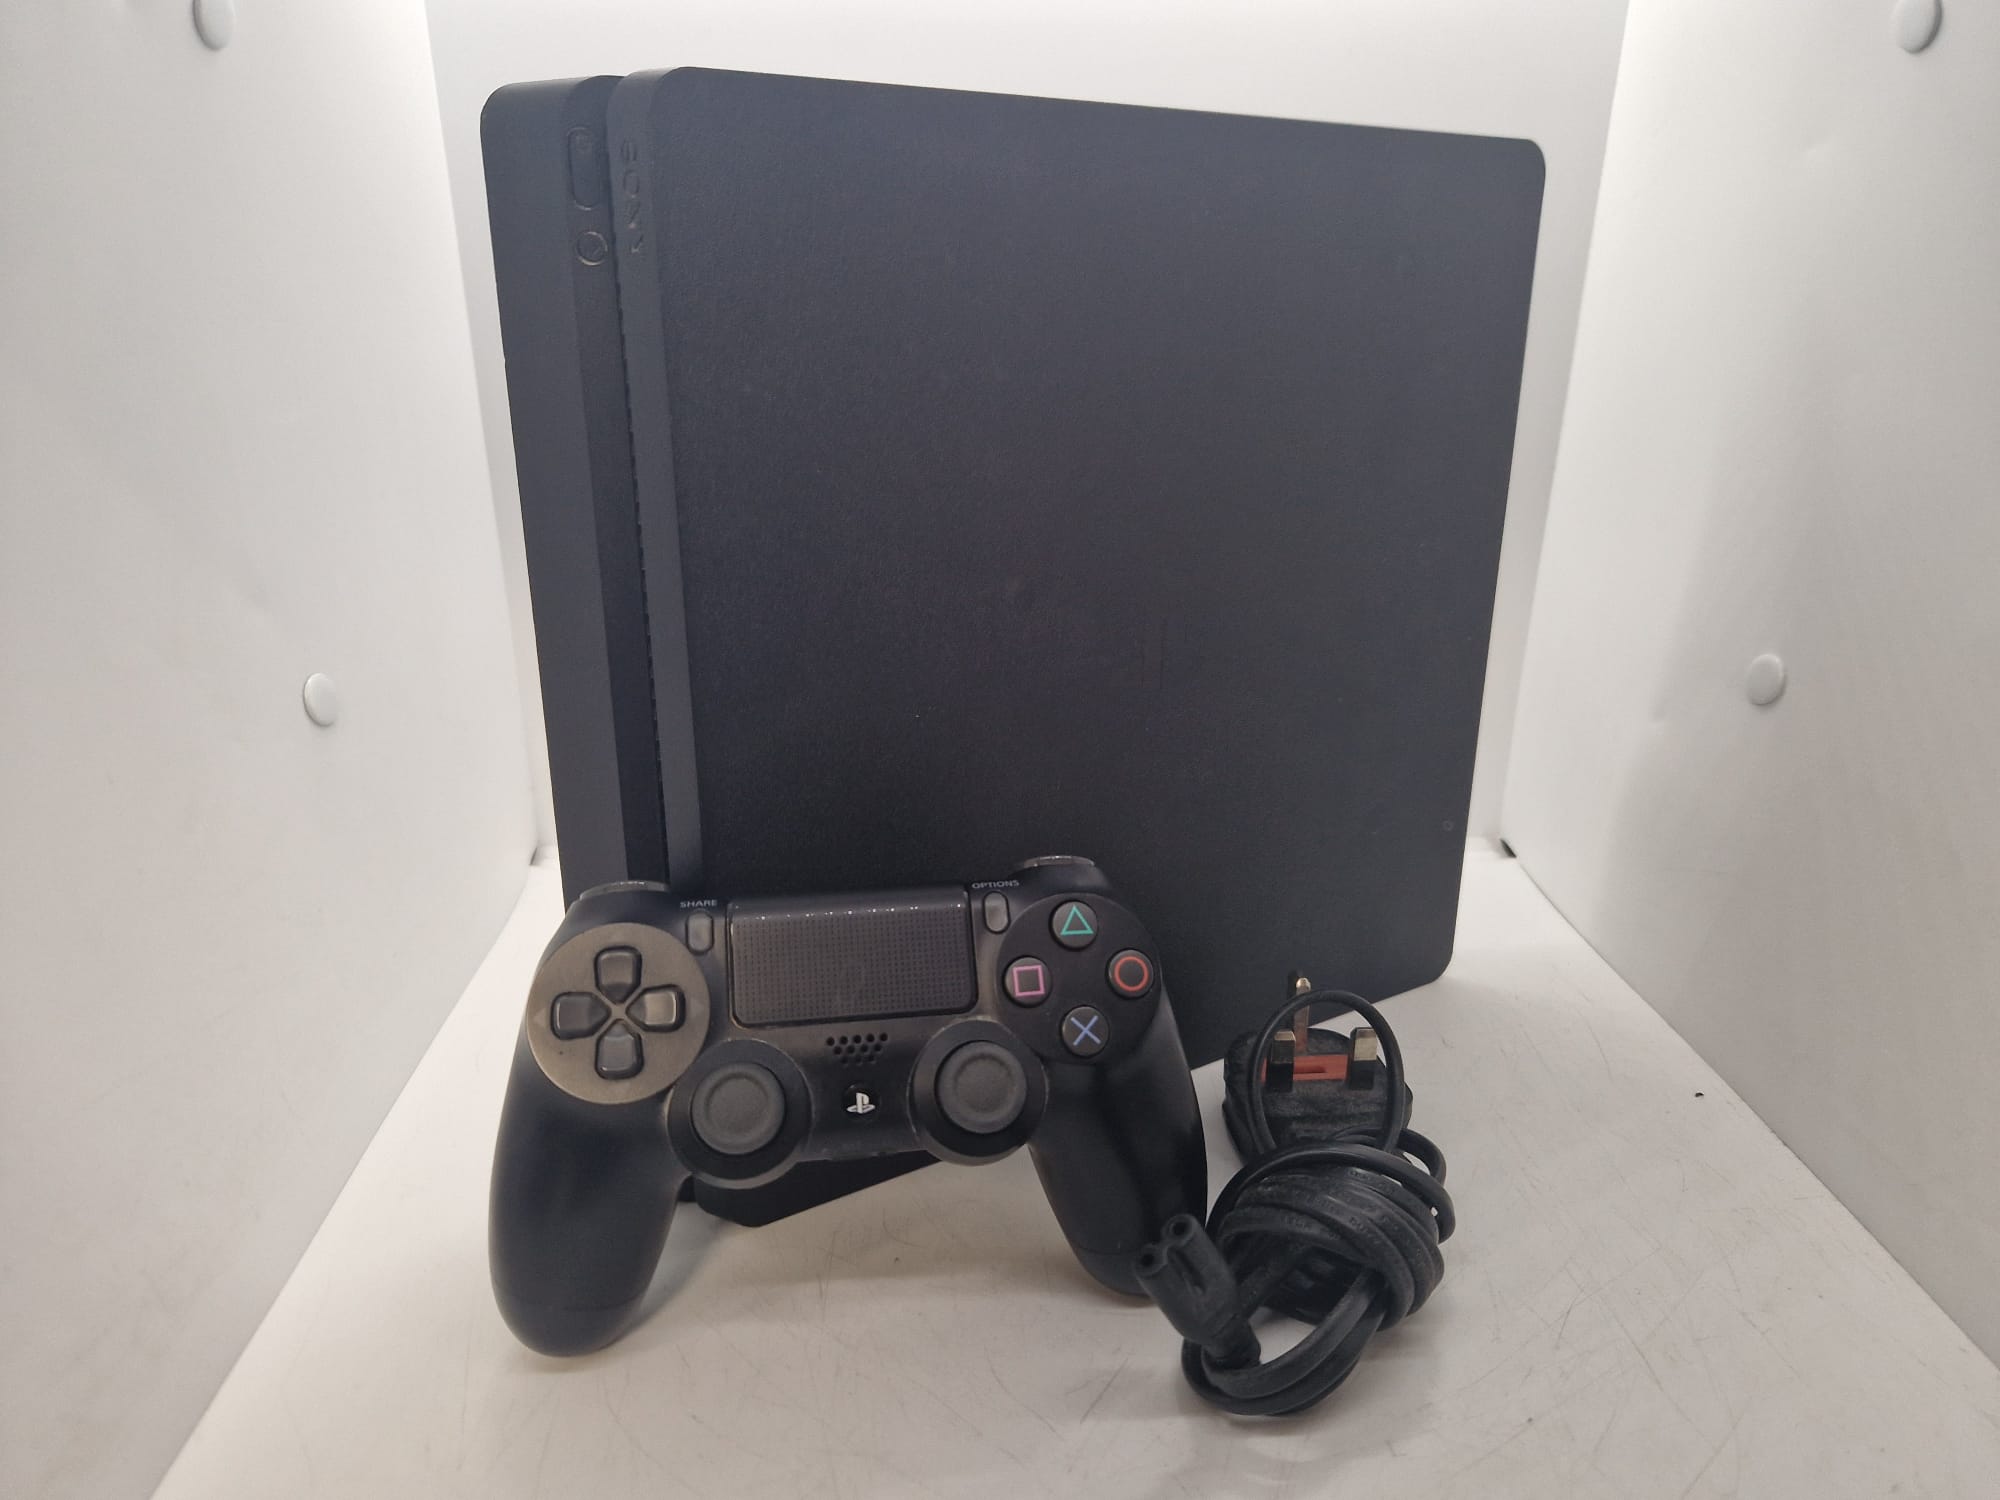 Sony PlayStation 4 Slim 500GB Console - Black No box/Hdmi